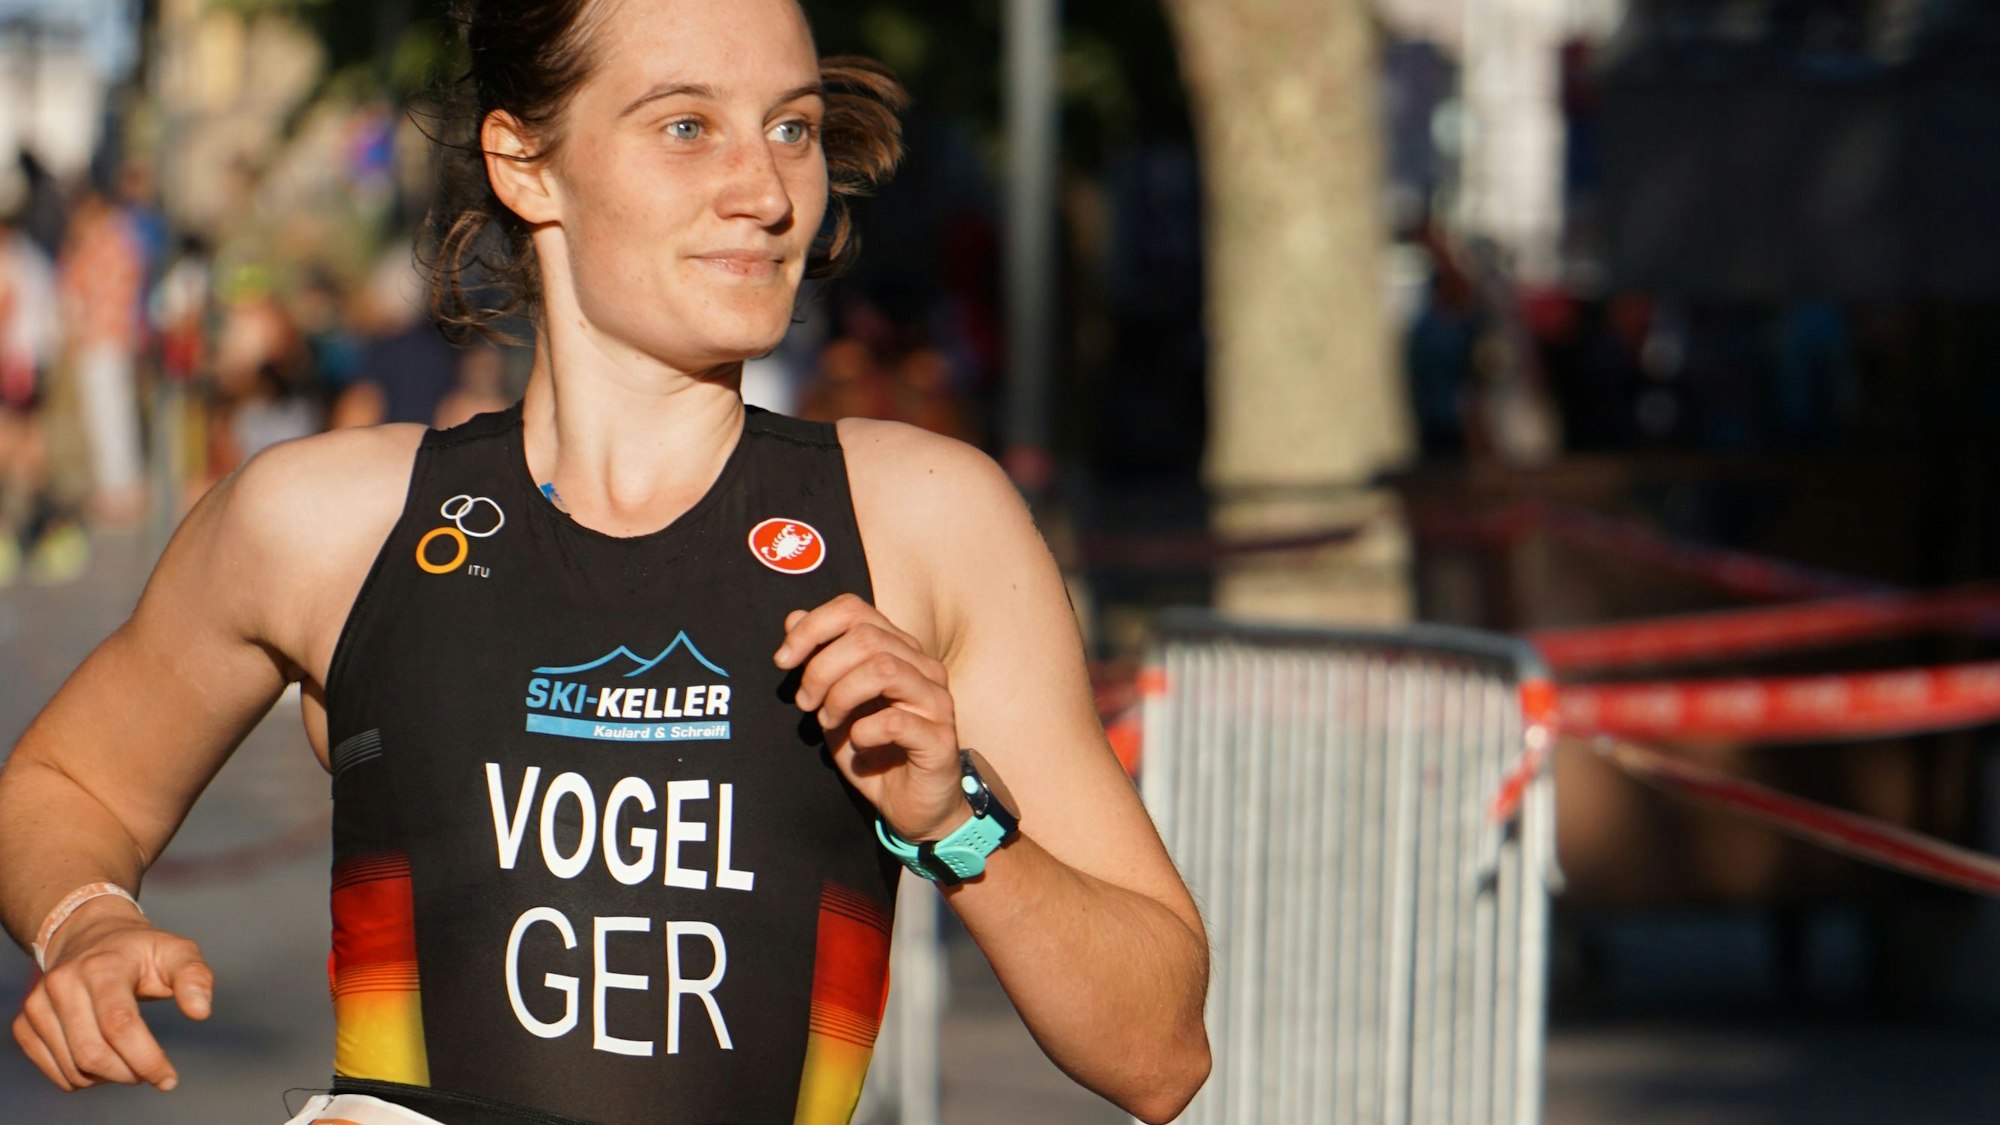 Milena Vogel ist Europameisterin im Cross-Duathlon und Cross-Triathlon geworden,